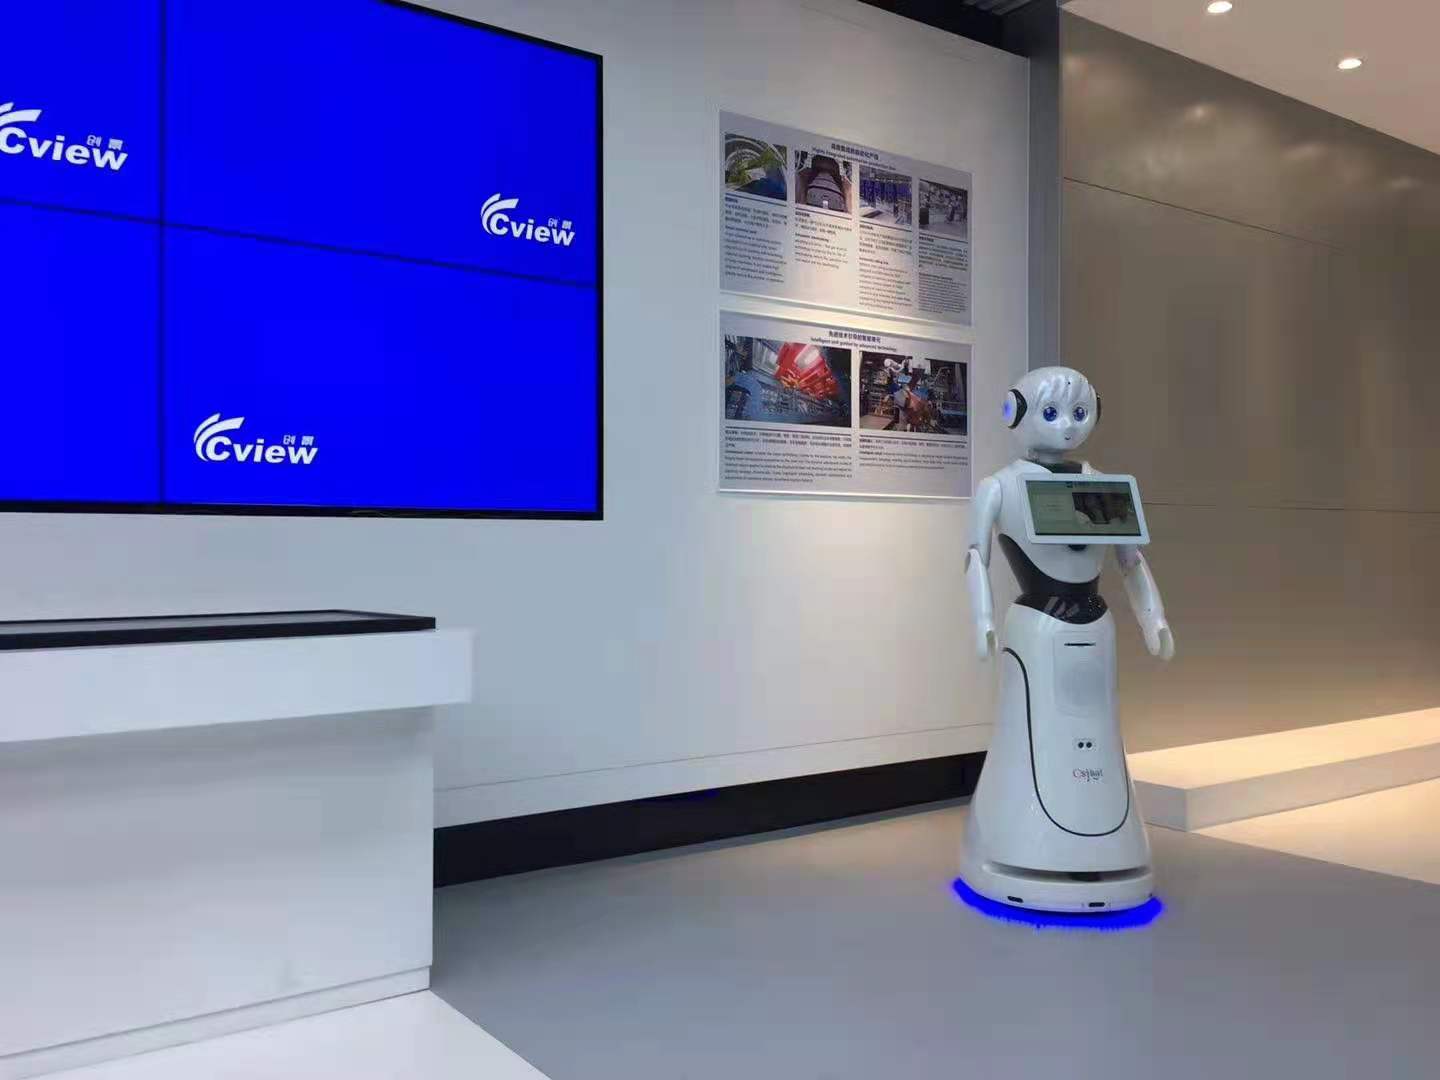 宁波展馆讲解机器人自主导览